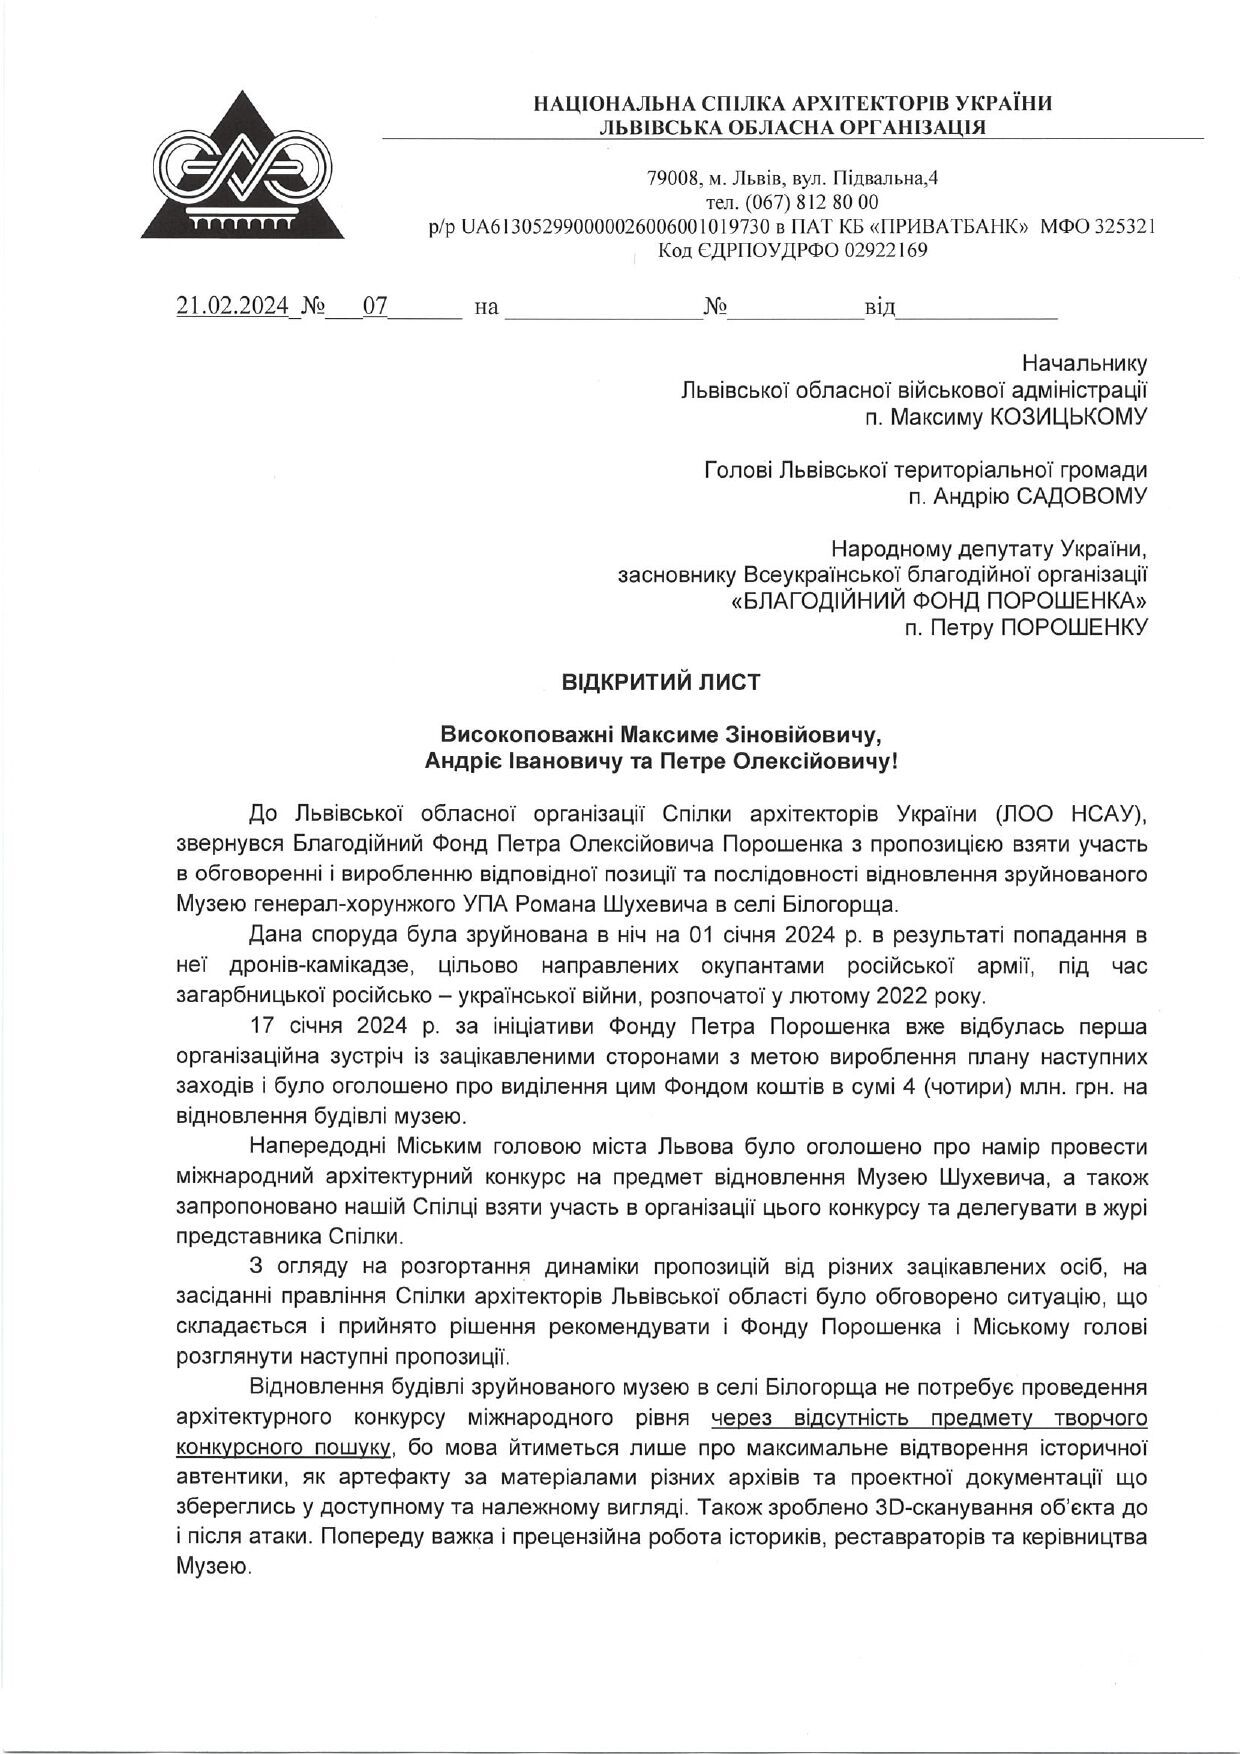 Львовский союз архитекторов призвал поддержать предложение Фонда Порошенко по восстановлению Музея Шухевича